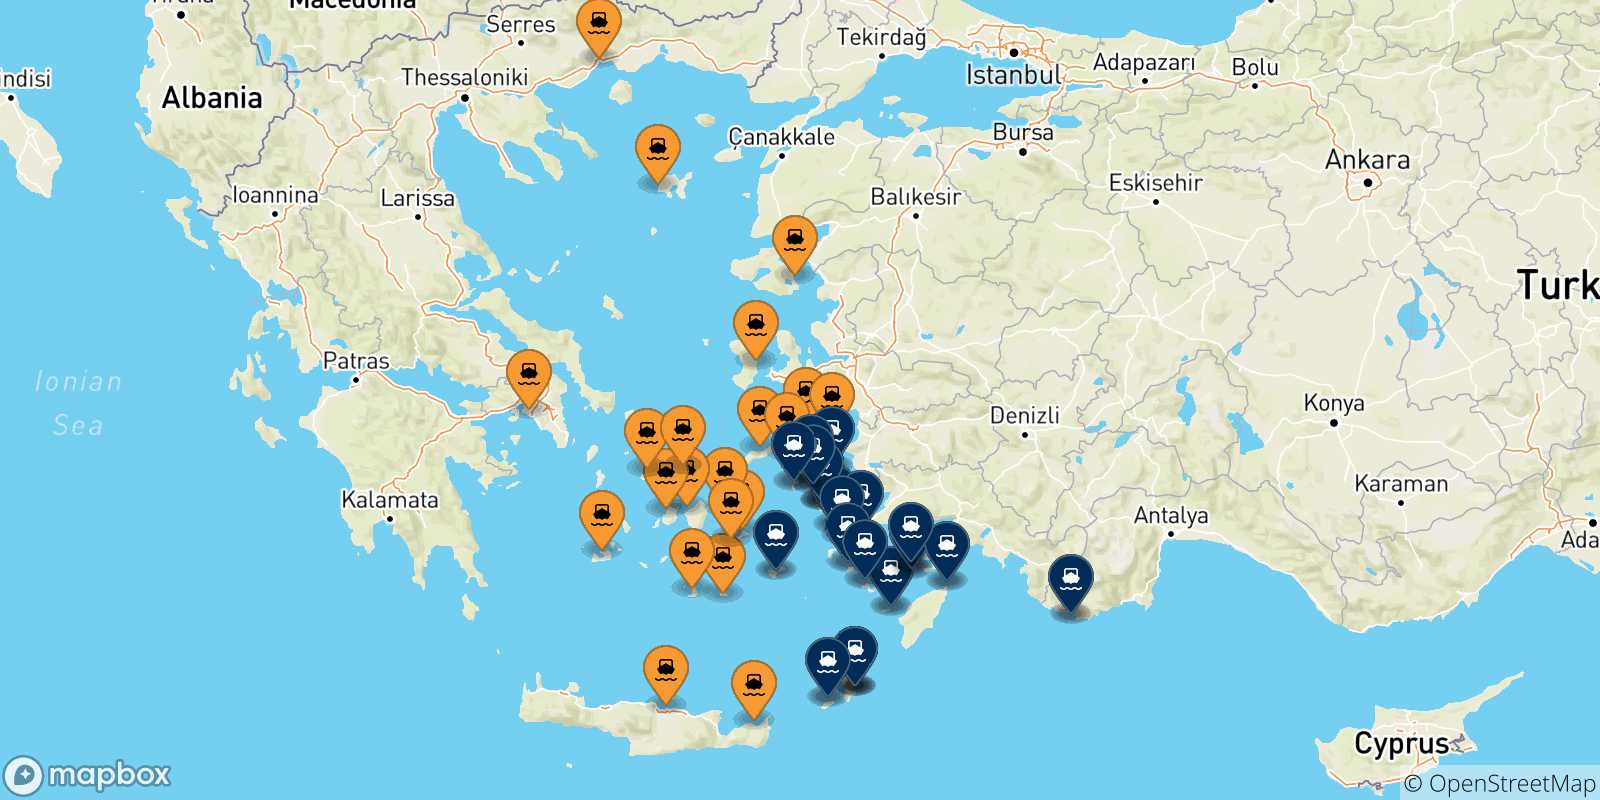 Mappa delle possibili rotte tra la Grecia e le Isole Dodecaneso